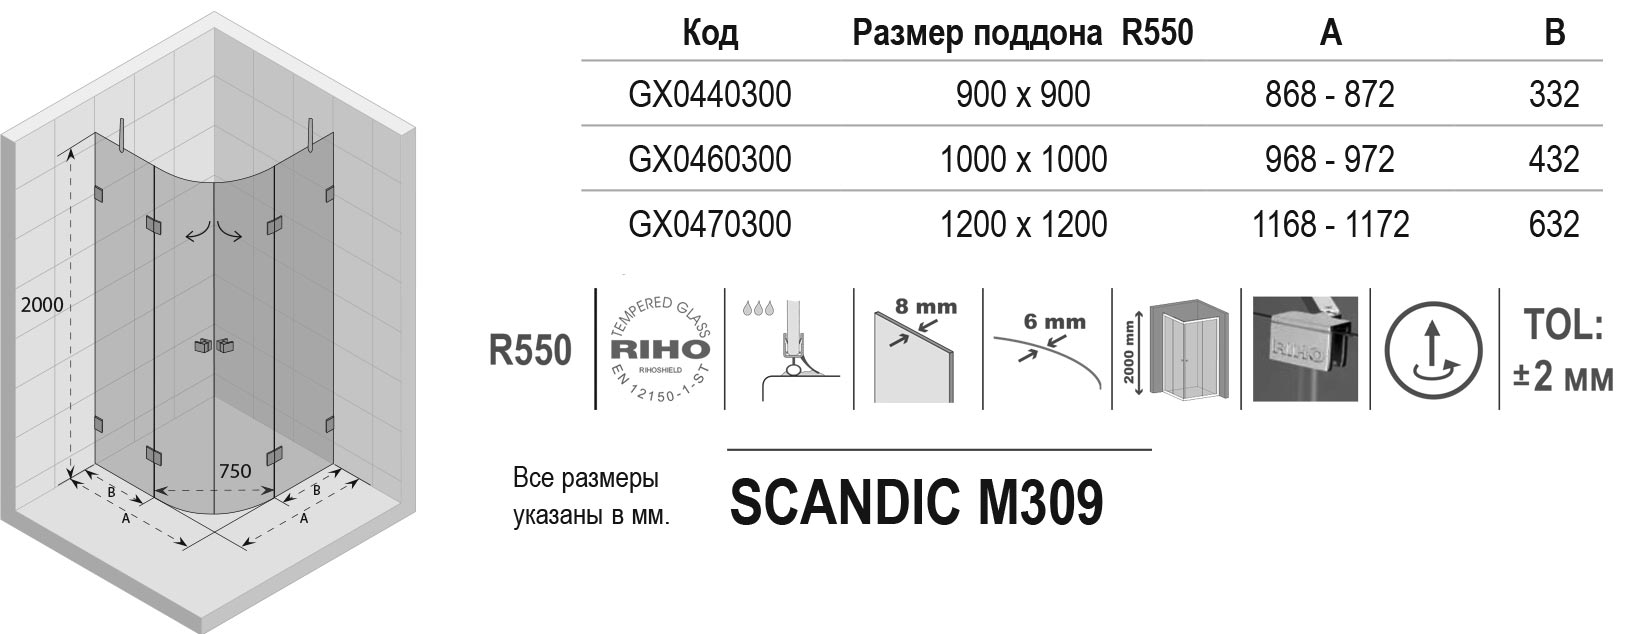 Чертёж Riho Scandic Lift Mistral M309 GX0470300